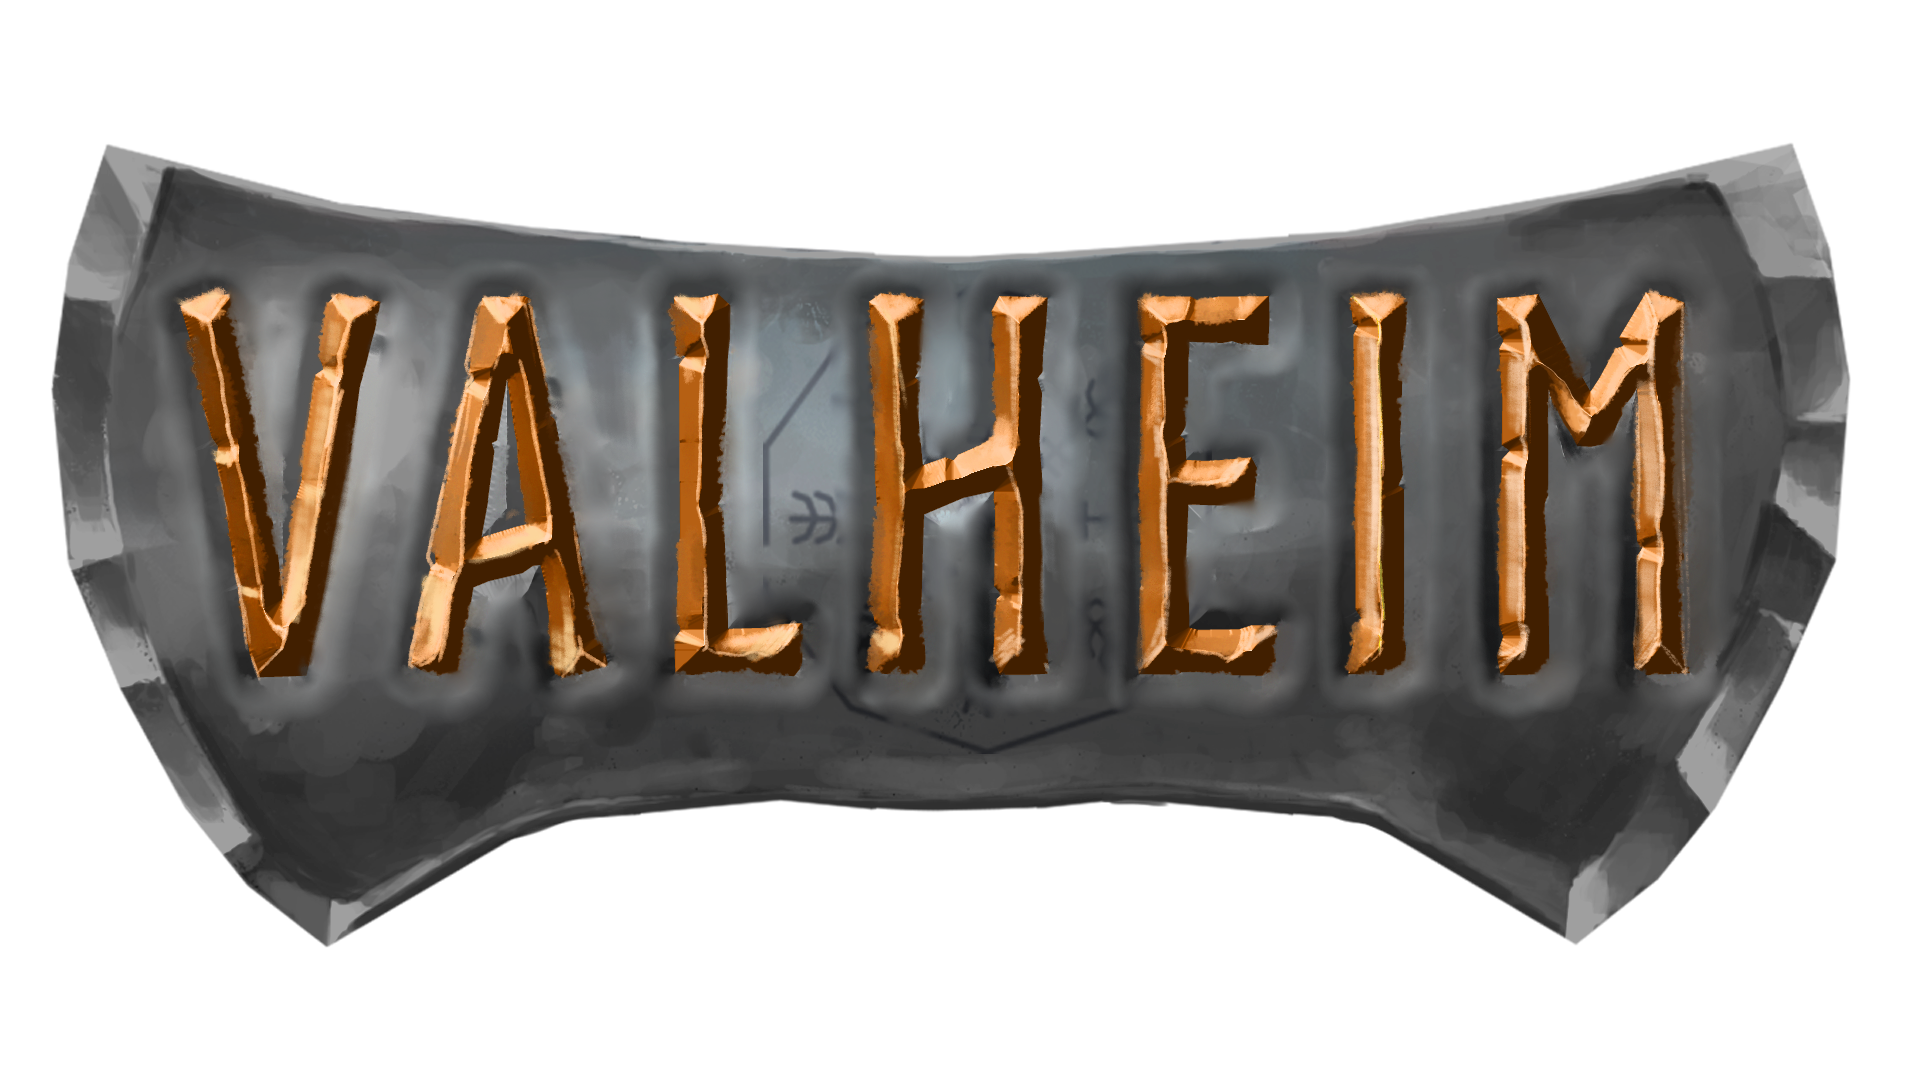 valheim_logo-image